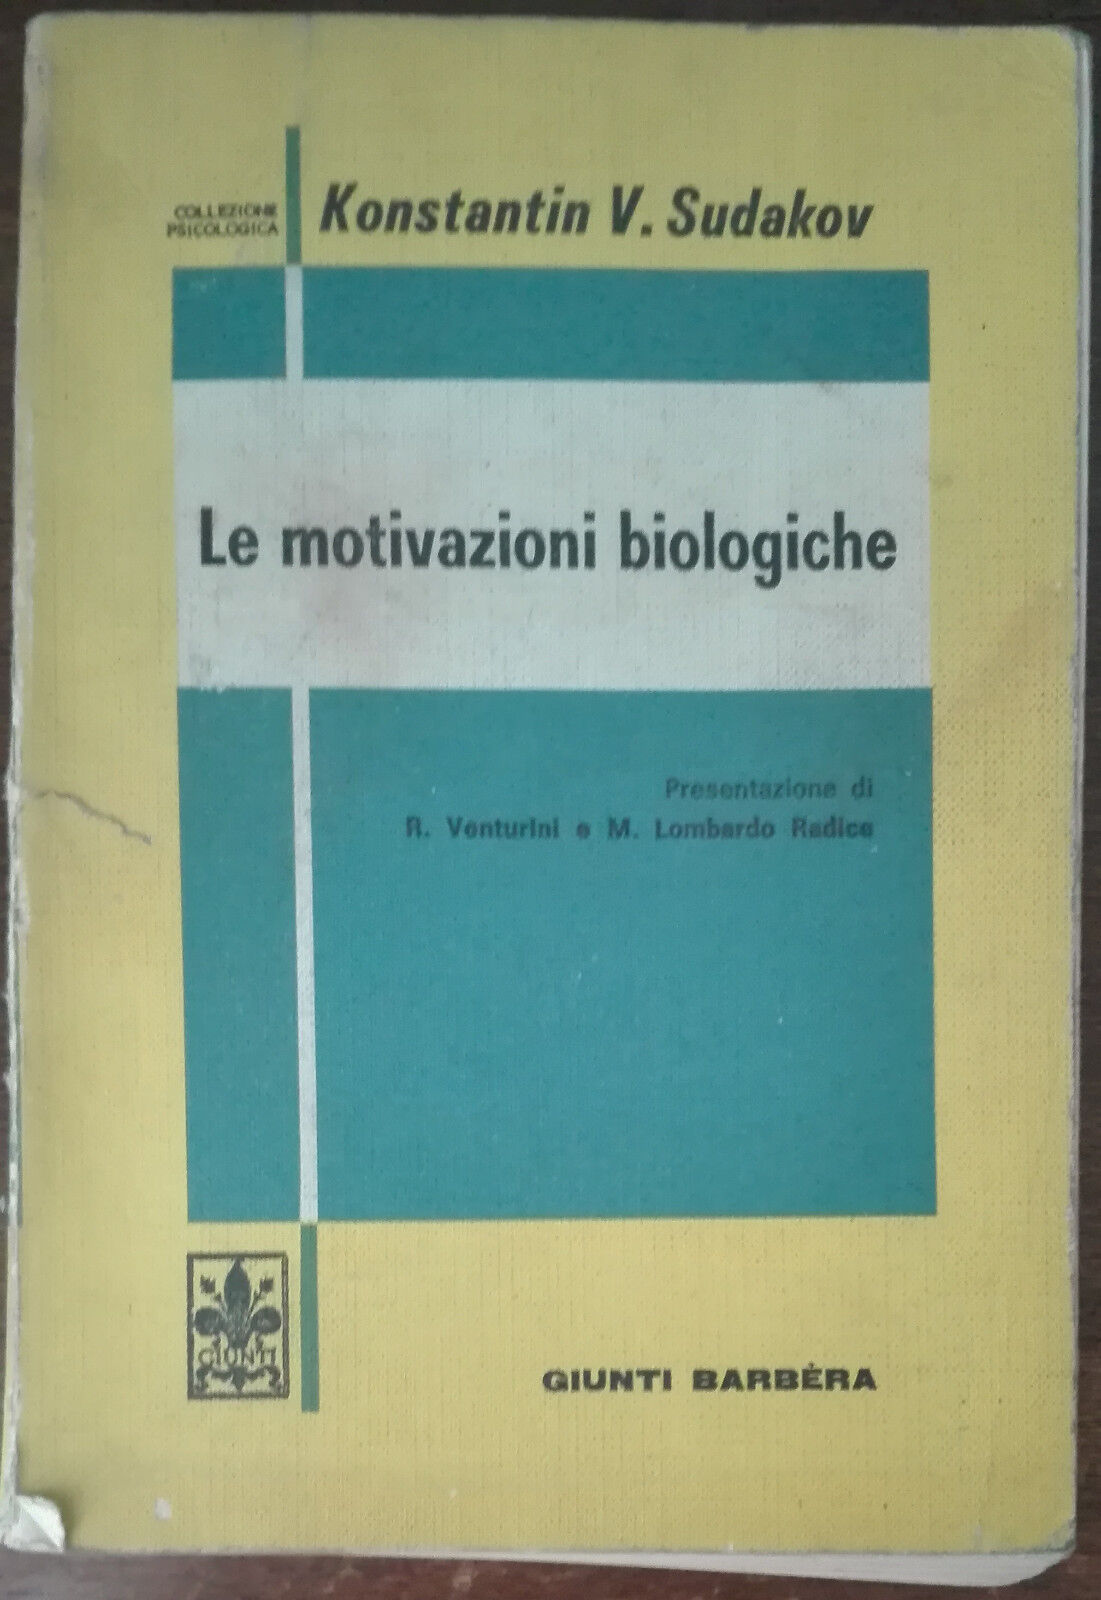 Le motivazioni biologiche - Konstantin V. Sudakov - Giunti-Barb?ra,1976 - A